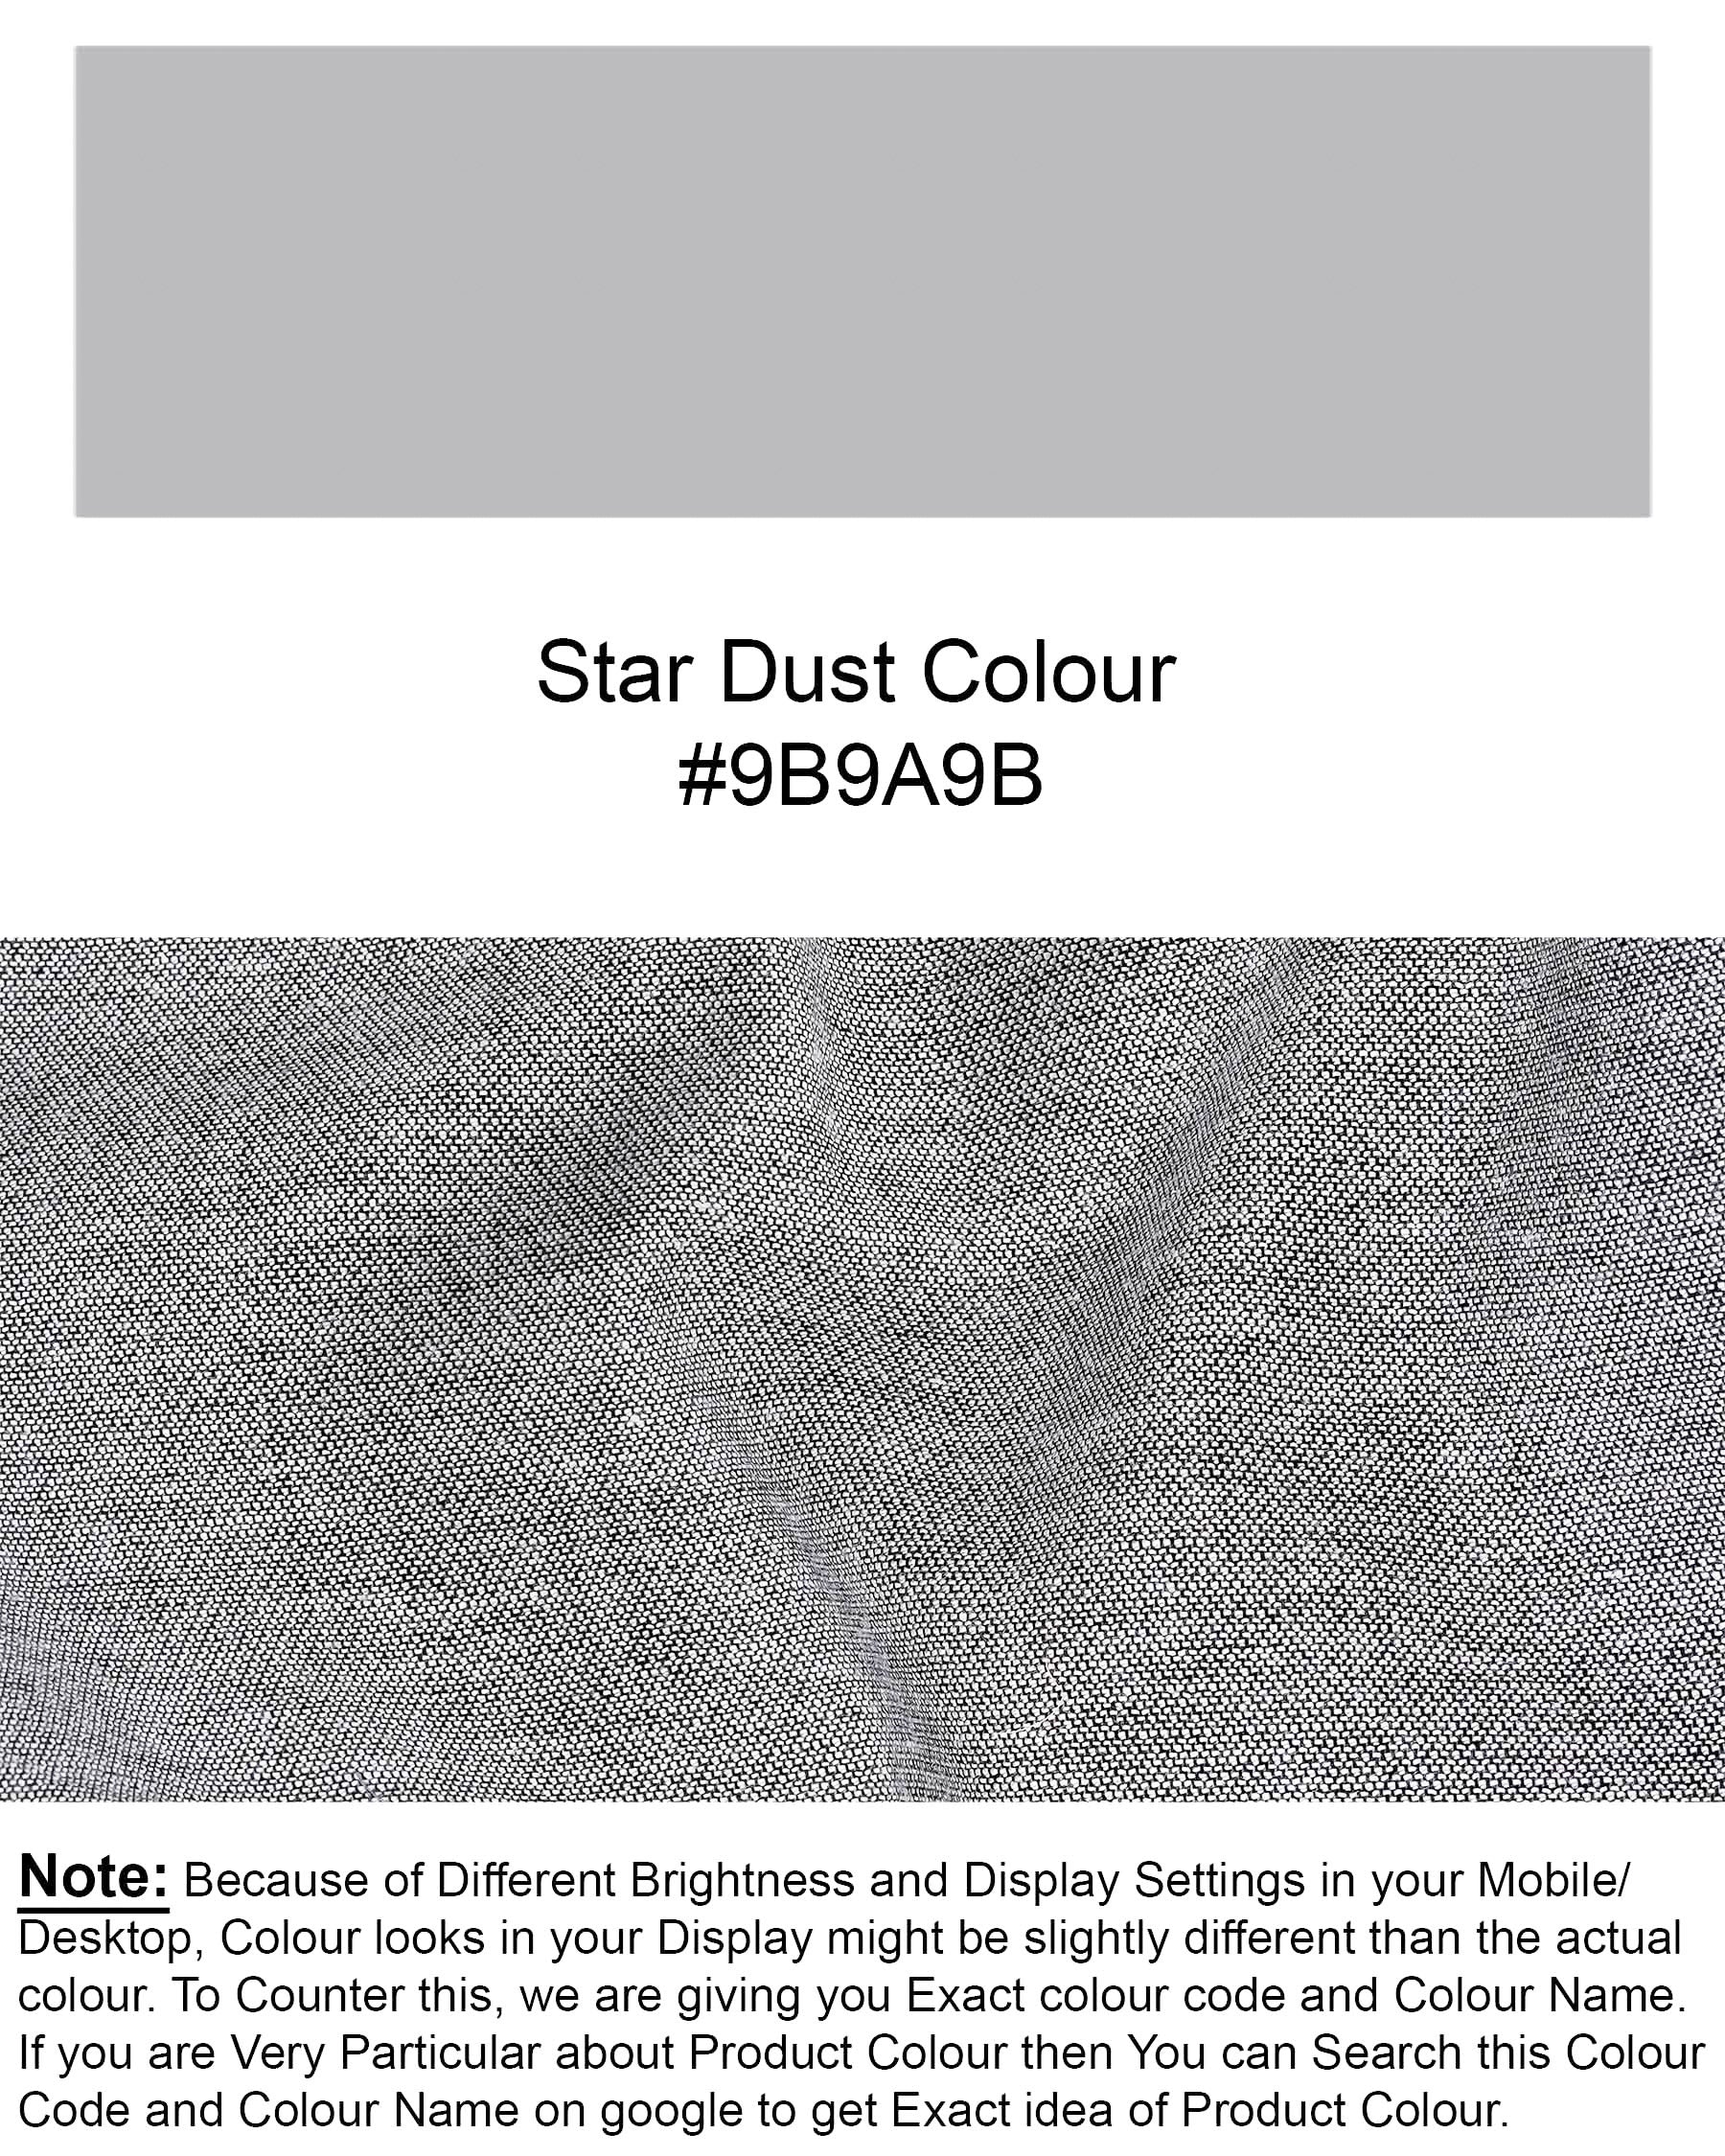 Star Dust Gray Cross Placket Bandhgala Premium Cotton Suit